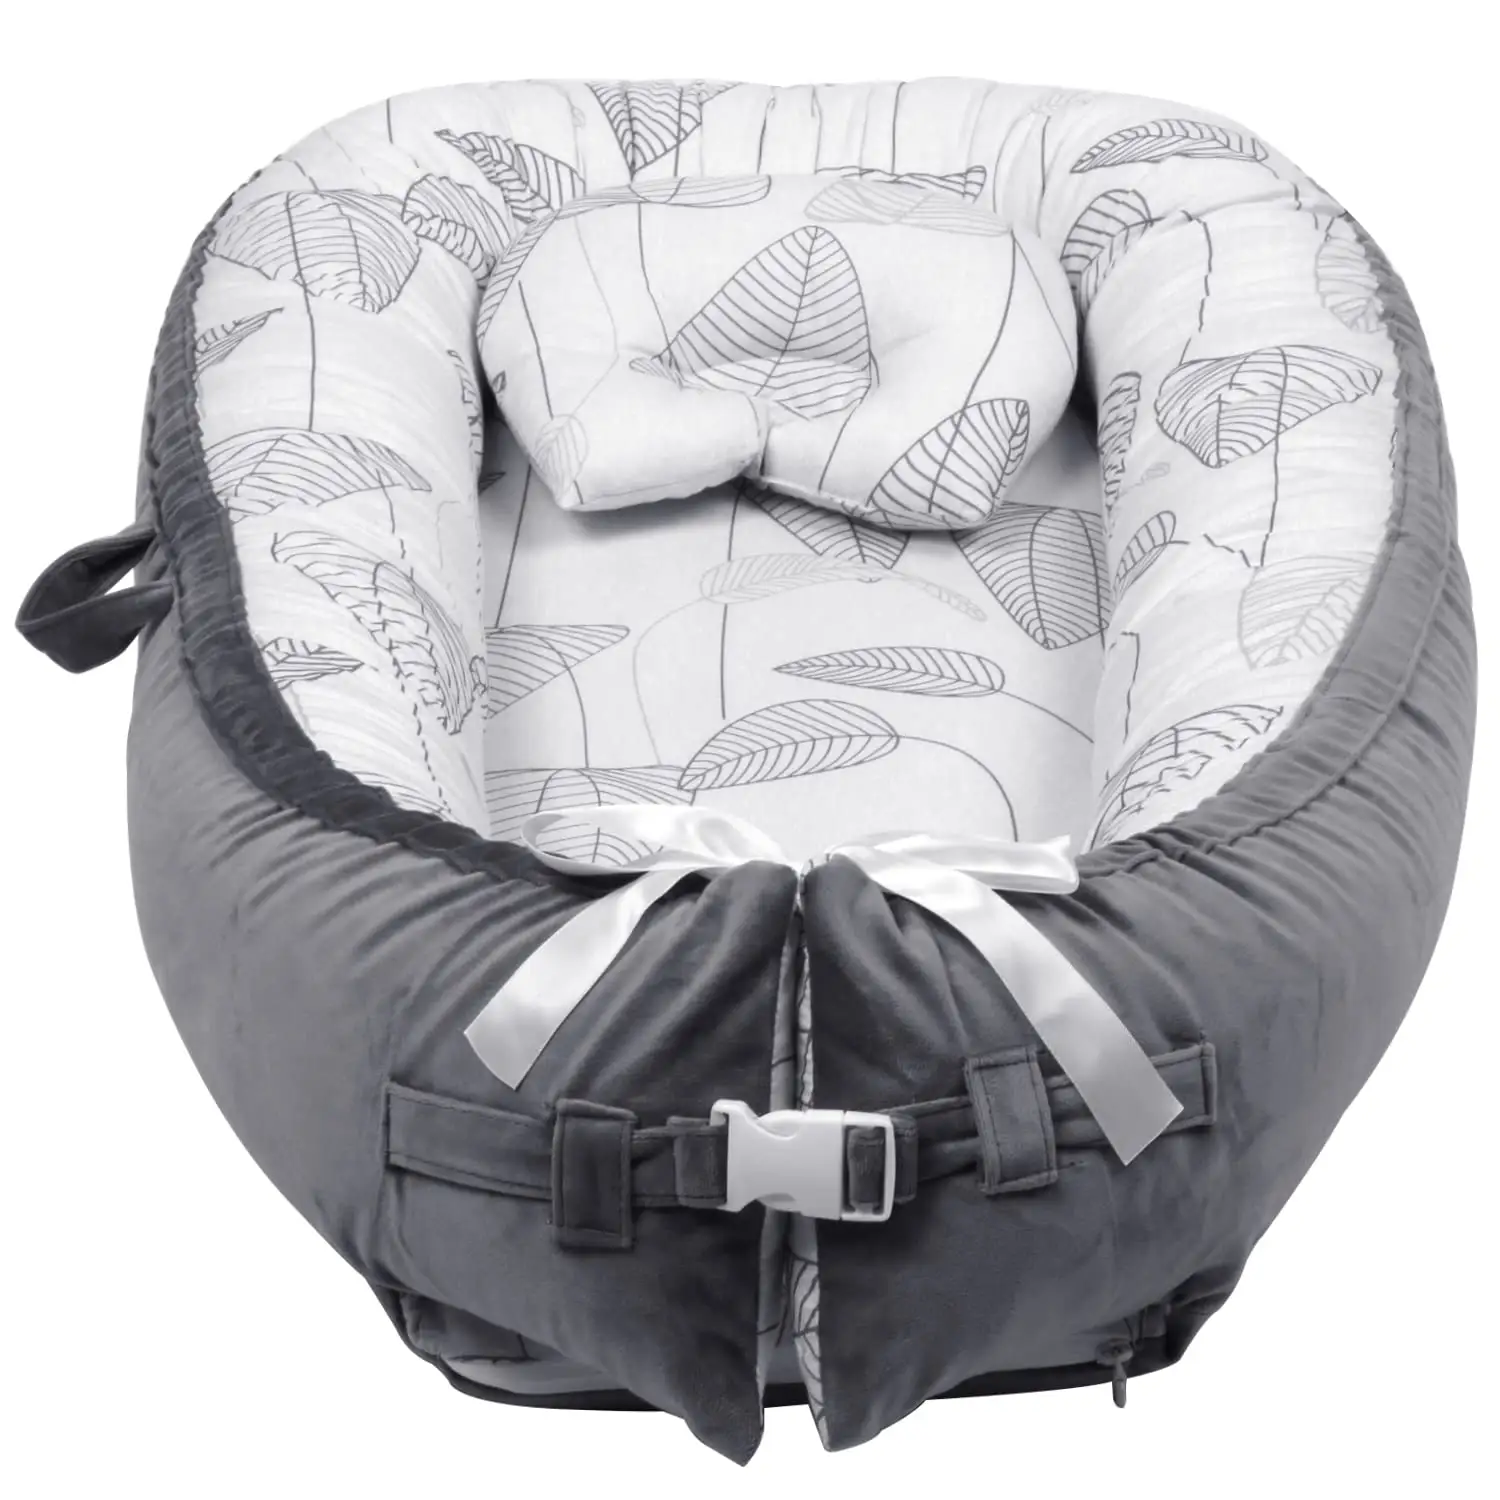 Transat portatif 100% coton pour bébé, nid de bébé, lit pour nouveau-né avec oreiller, lit-balançoire facile à transporter, idéal pour le voyage